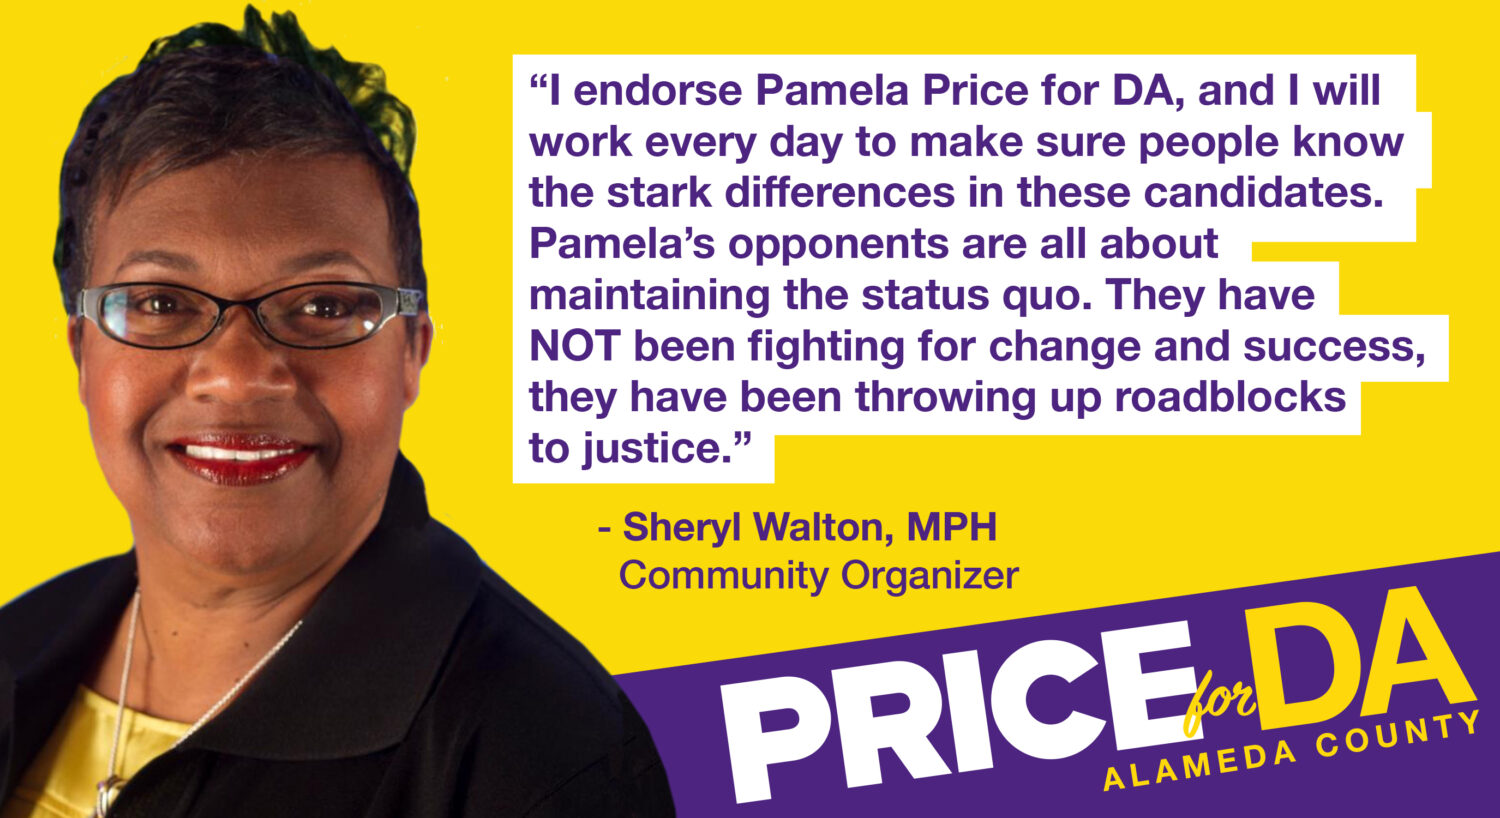 Sheryl Walton, Community Organizer endorses Pamela Price to make pathways to justice, not roadblocks